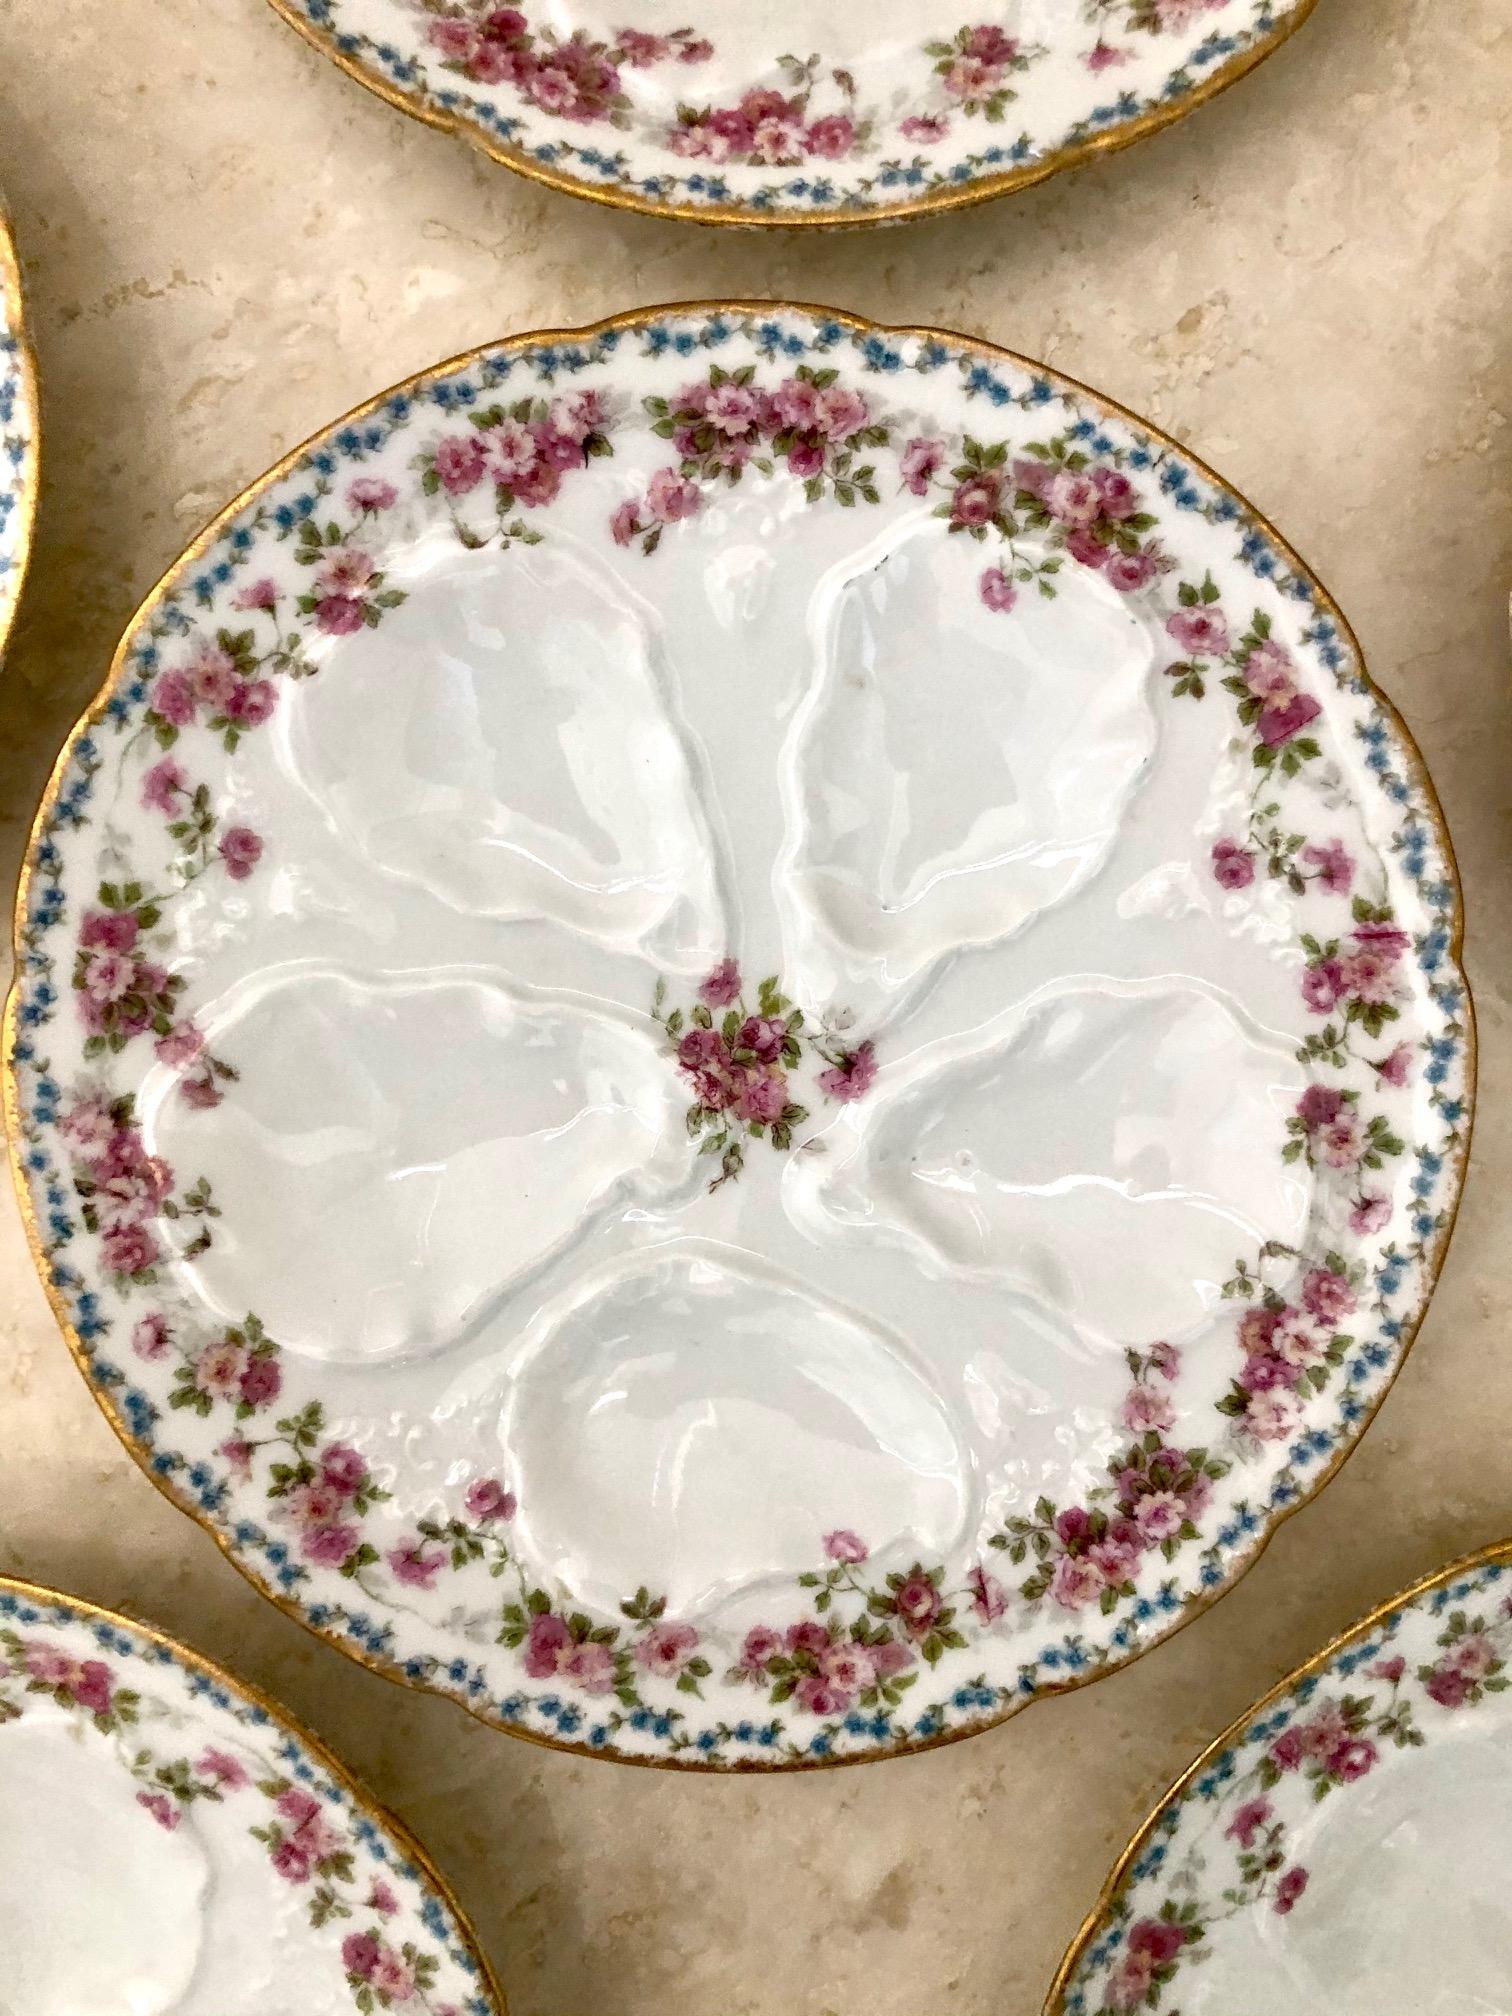 Dieser elegante und klassische Limoges-Austernenteller ist für 5 Austern ausgelegt,
mit einem bezaubernden Muster aus rosa und violetten Blumen und einer gebürsteten
goldrand. Teller misst etwa 8 und 5/8